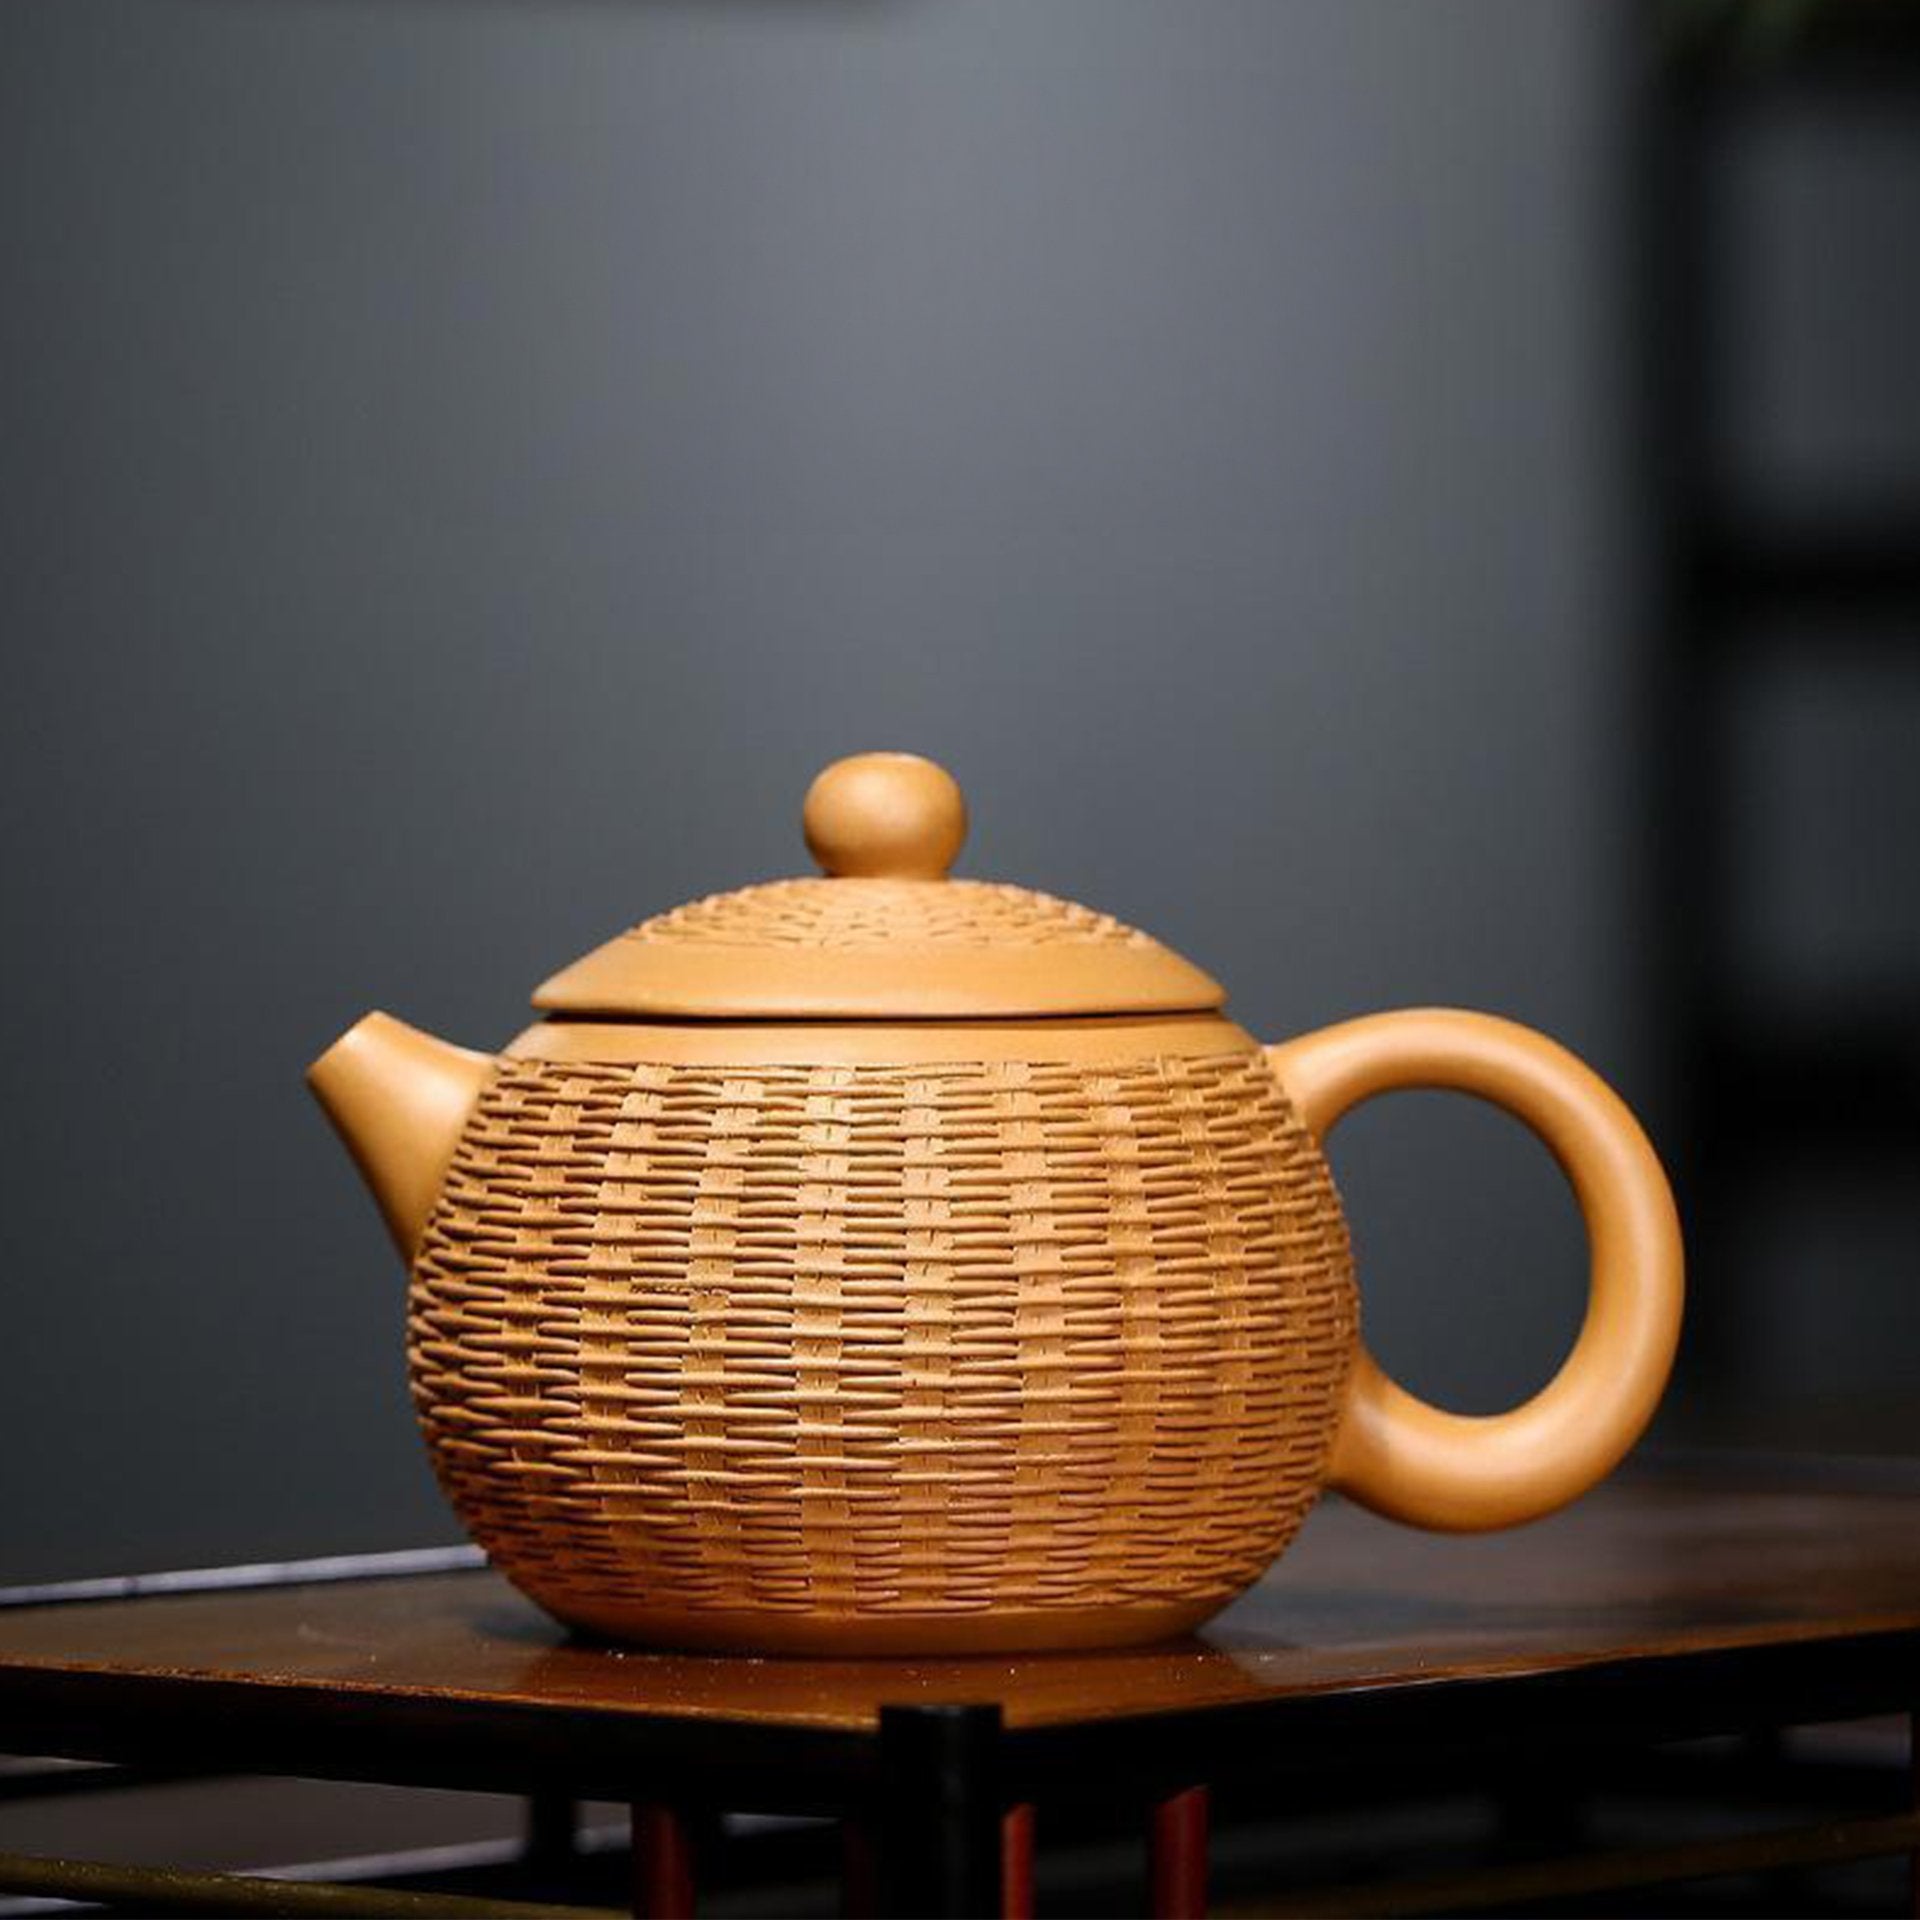 Golden textured teapot on a shelf in a dark room.